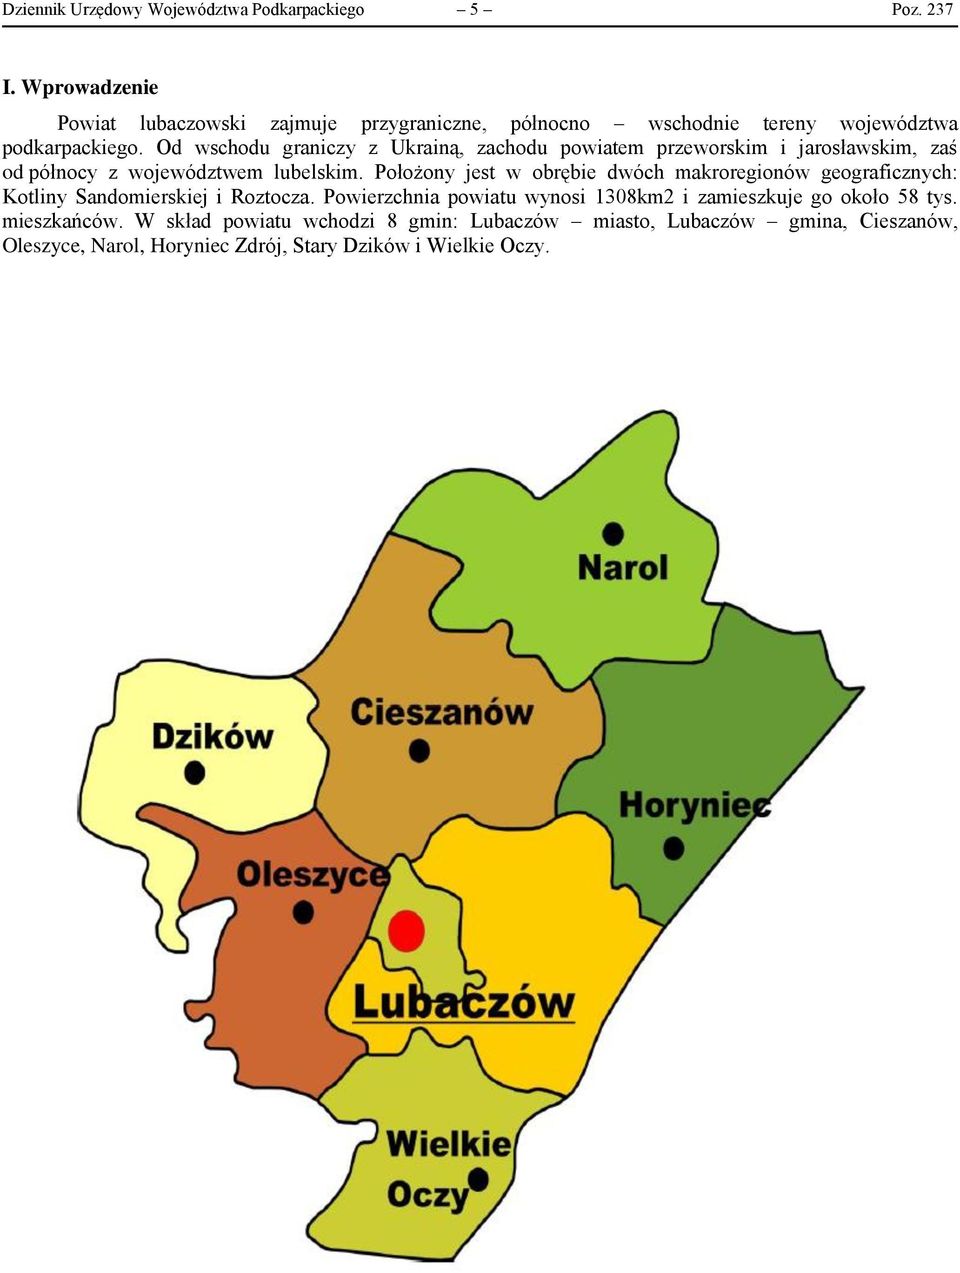 Od wschodu graniczy z Ukrainą, zachodu powiatem przeworskim i jarosławskim, zaś od północy z województwem lubelskim.